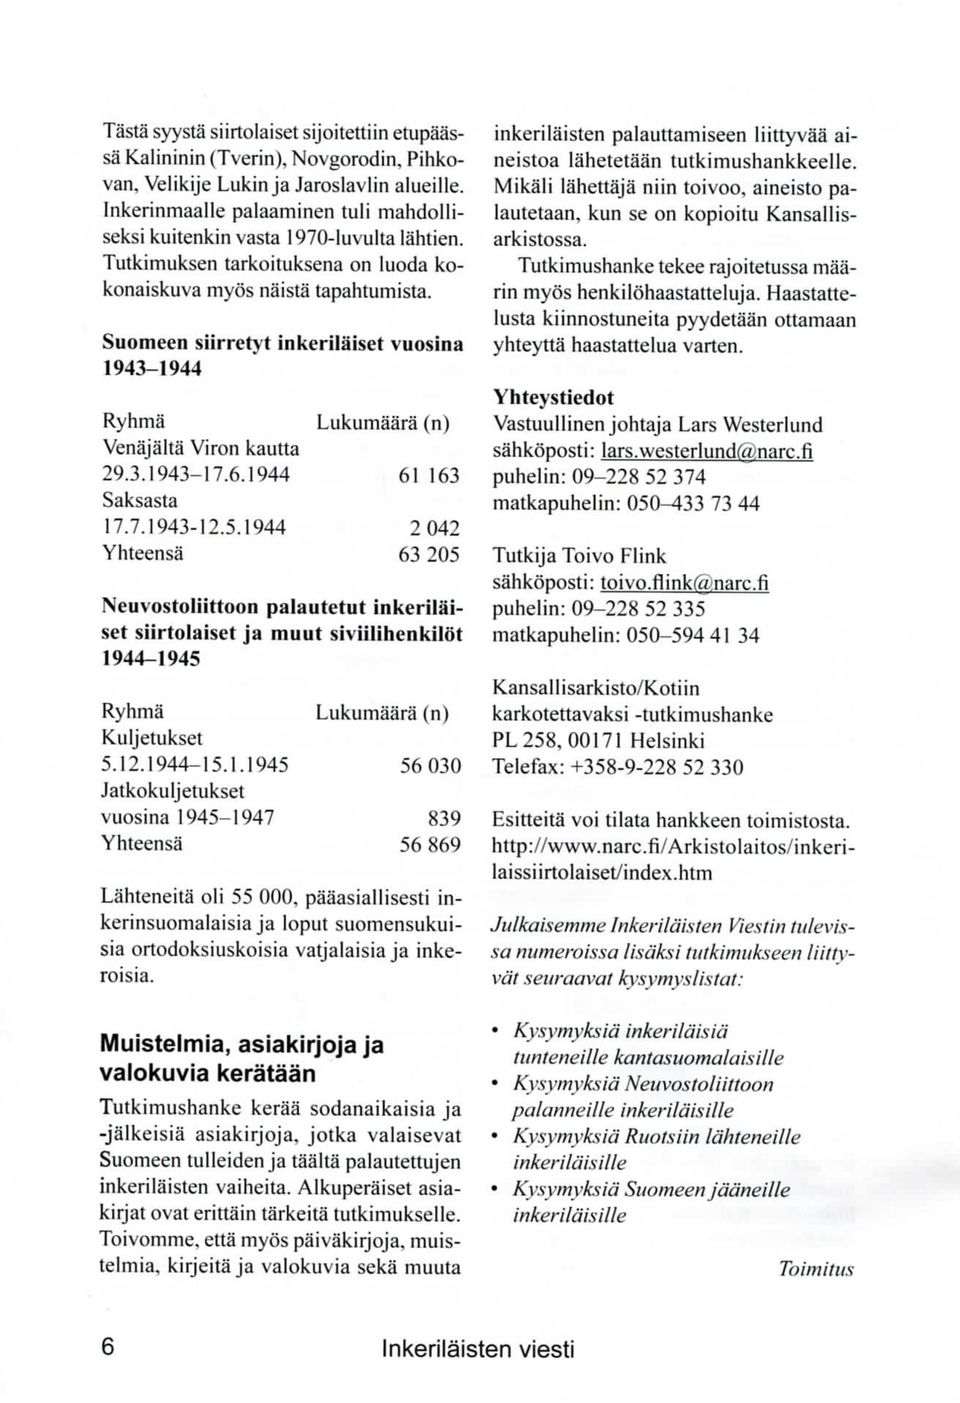 Suomeen siirretyt inkerilaiset vuosina 1943-1944 Ryhma Venajalta Viron kautta 29.3.1943-17.6.1944 Saksasta 17.7.1943-12.5.